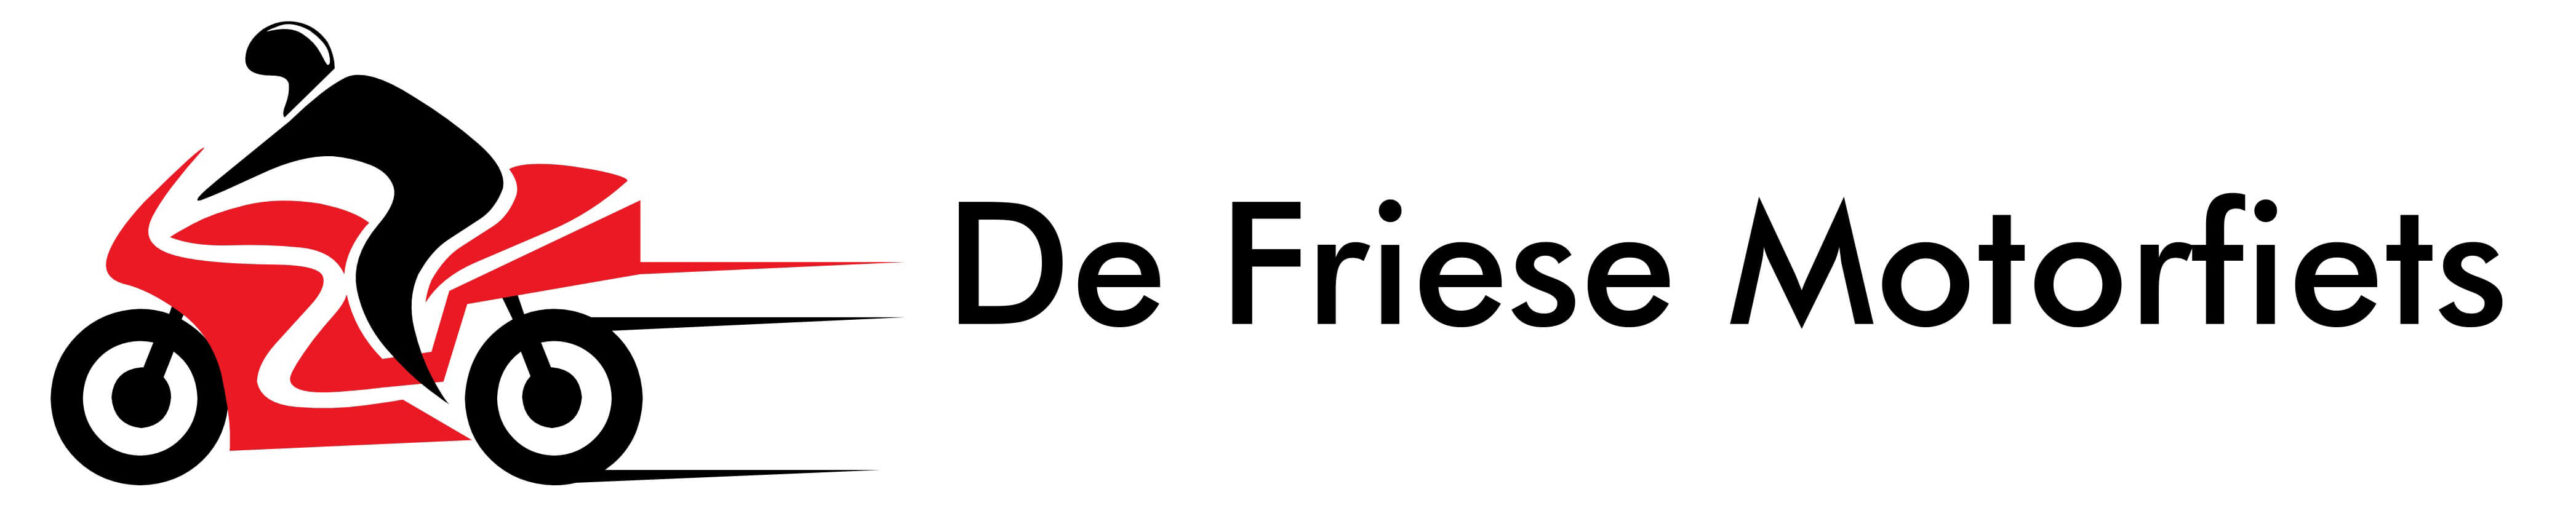 DeFrieseMotorfiets_logo